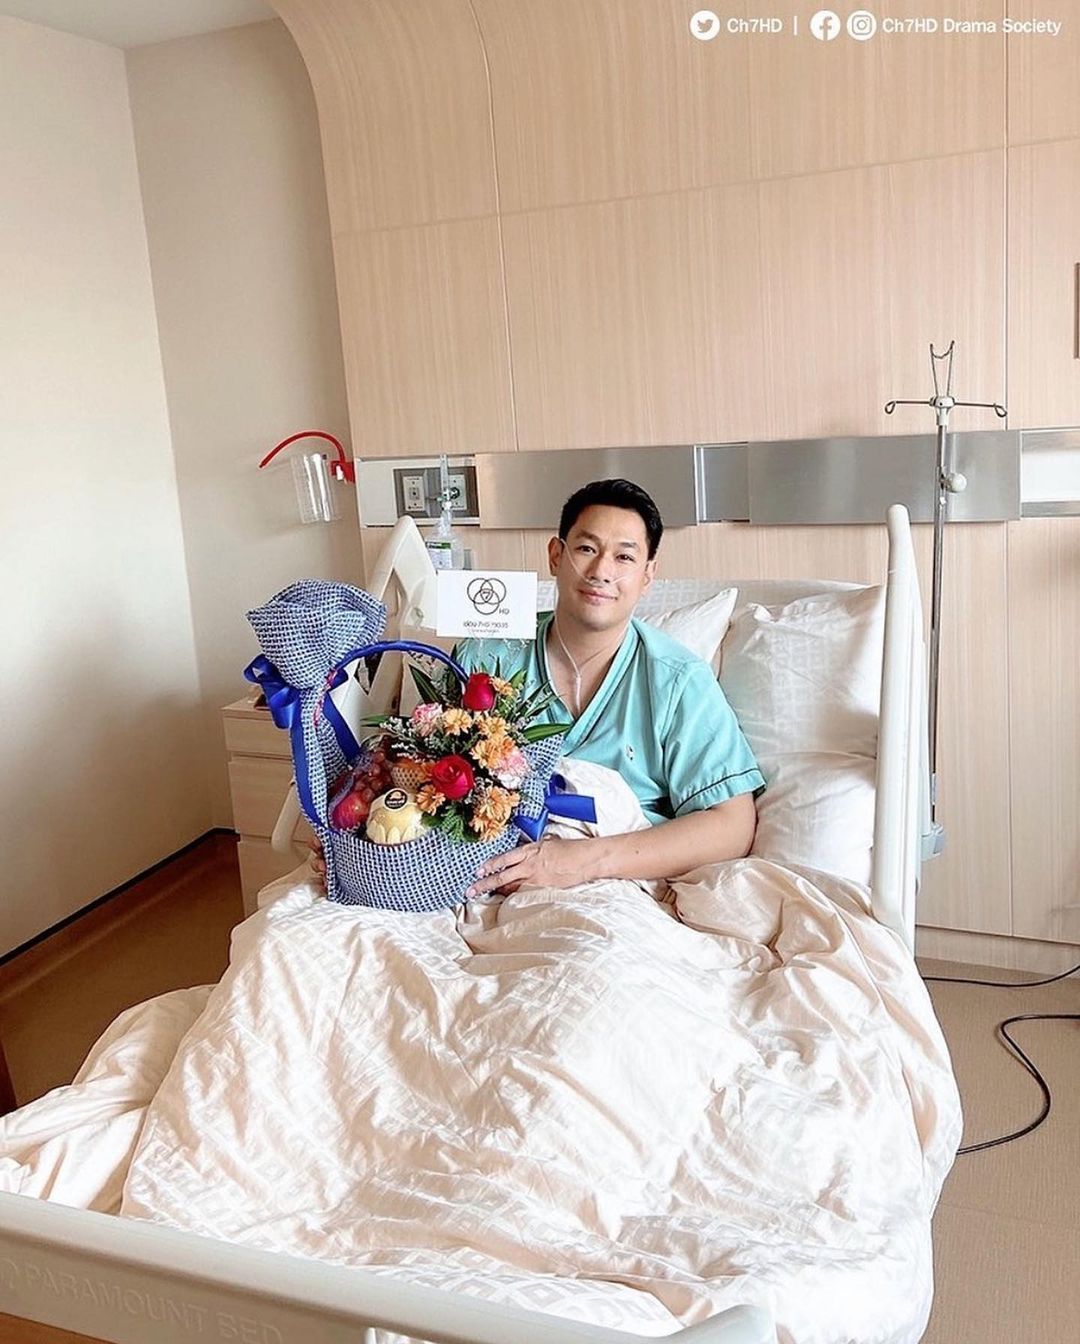 ดาราไทยเป็นมะเร็งหัวใจ เข้าโรงพยาบาล ทำคีโมถึง 5 ครั้ง - ภาพที่ 3